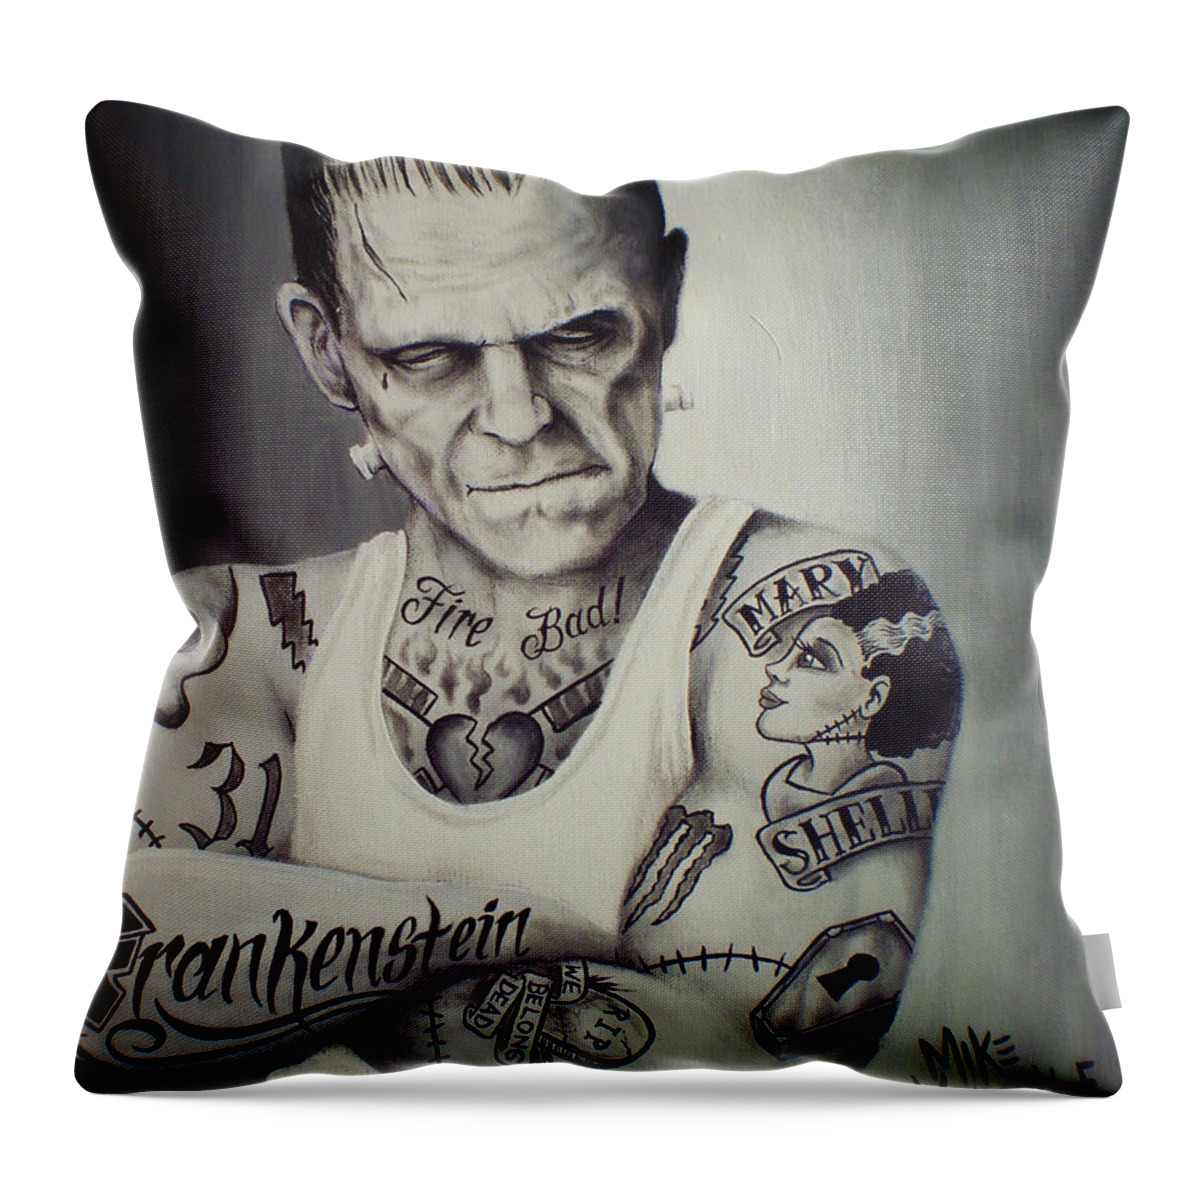 Frankenstein Tattoo Throw Pillow featuring the painting Tattooed Frankenstein by Mike Vanderhoof by Mike Vanderhoof